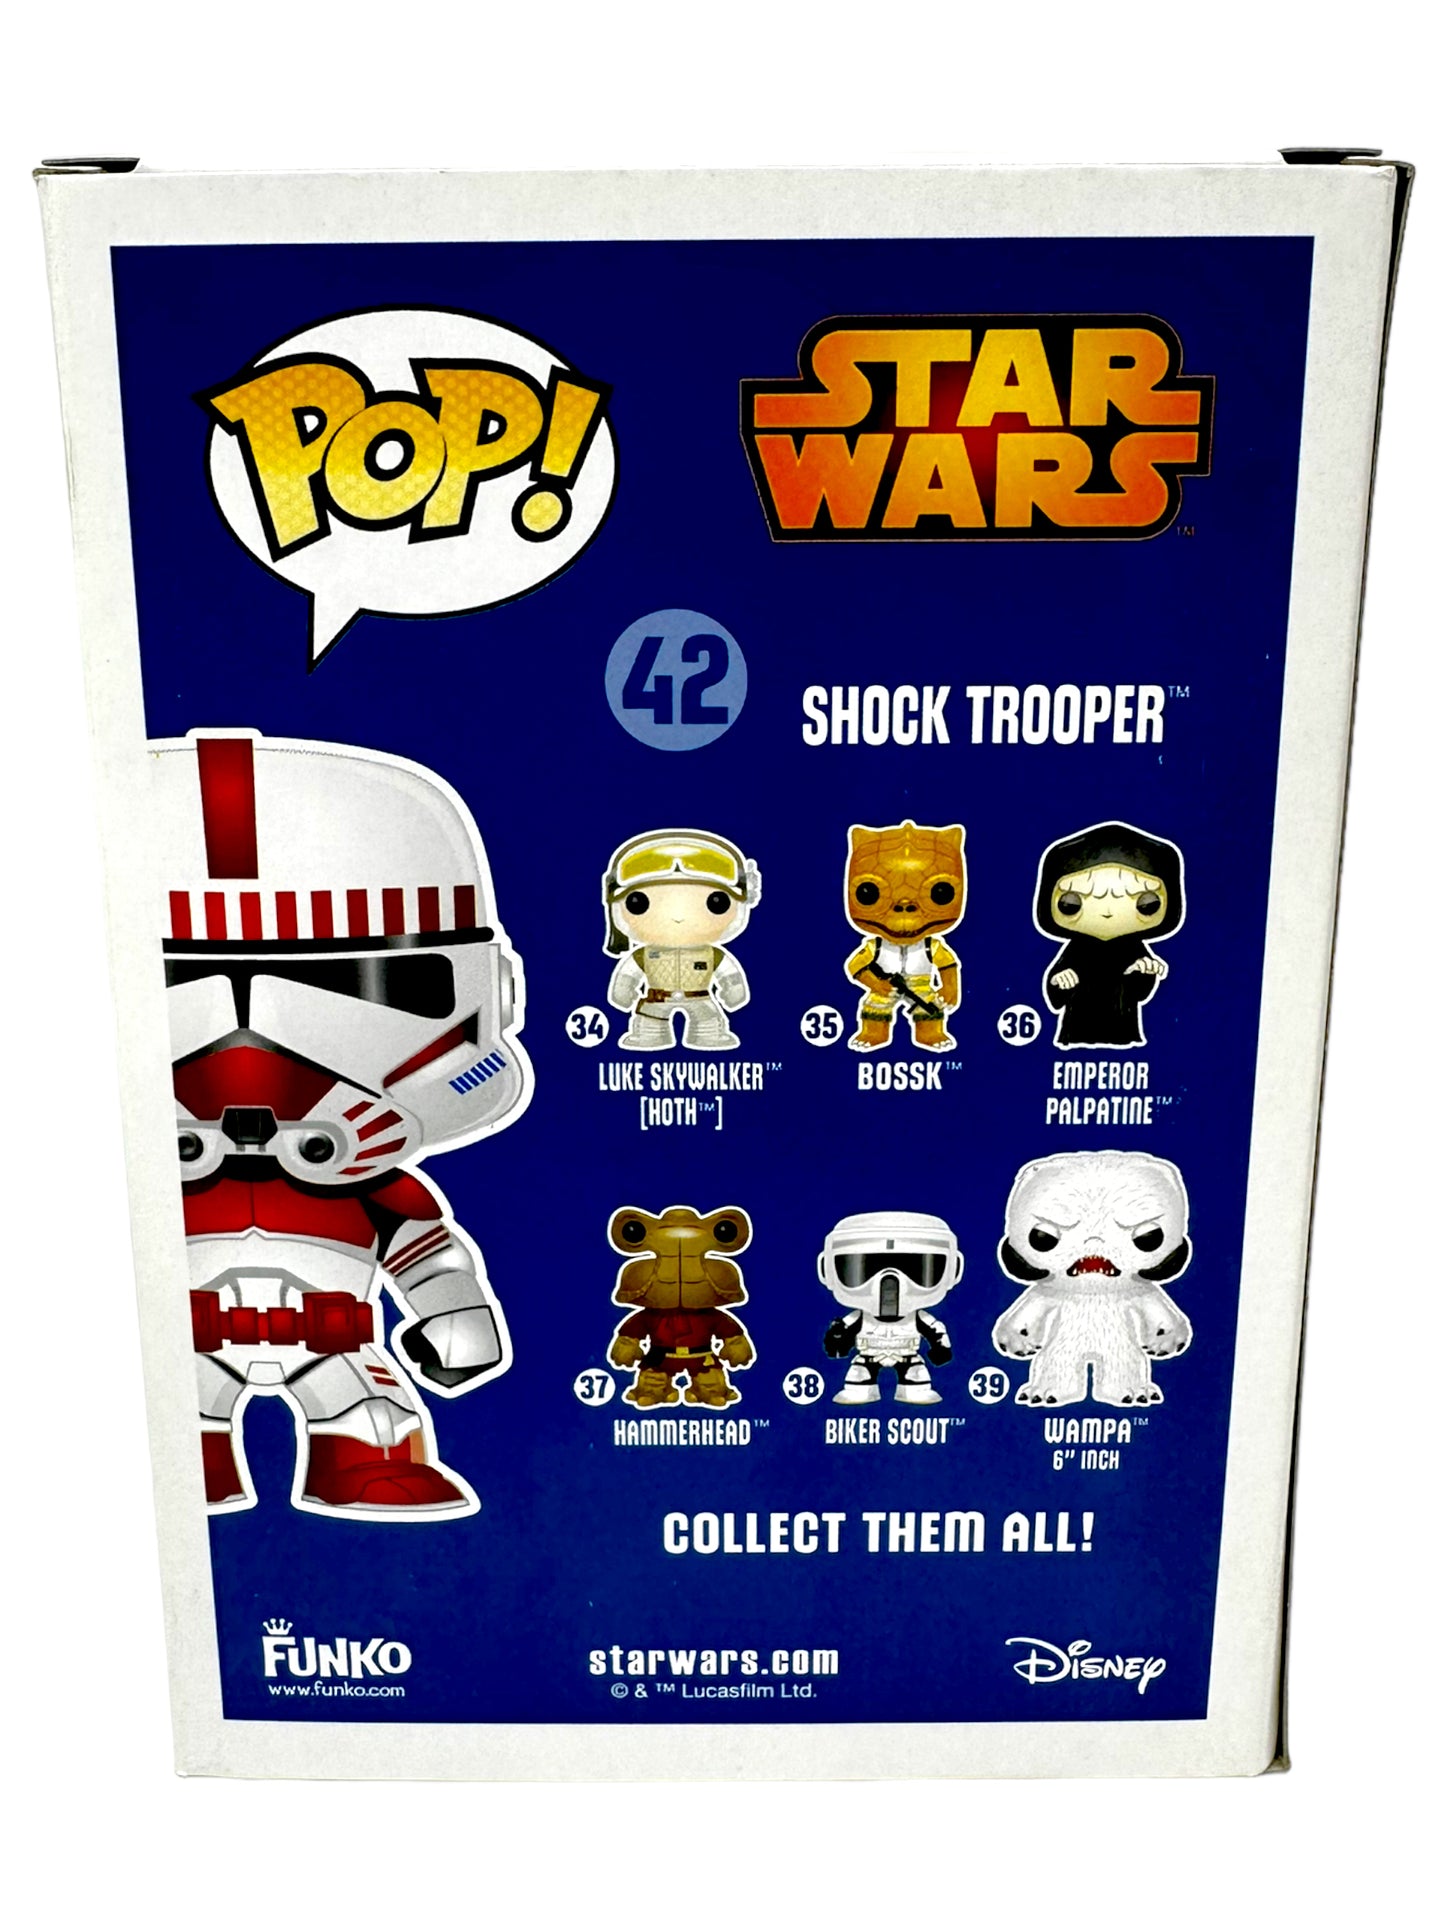 Sold 2015 Star Wars Celebrations Shock Trooper 42